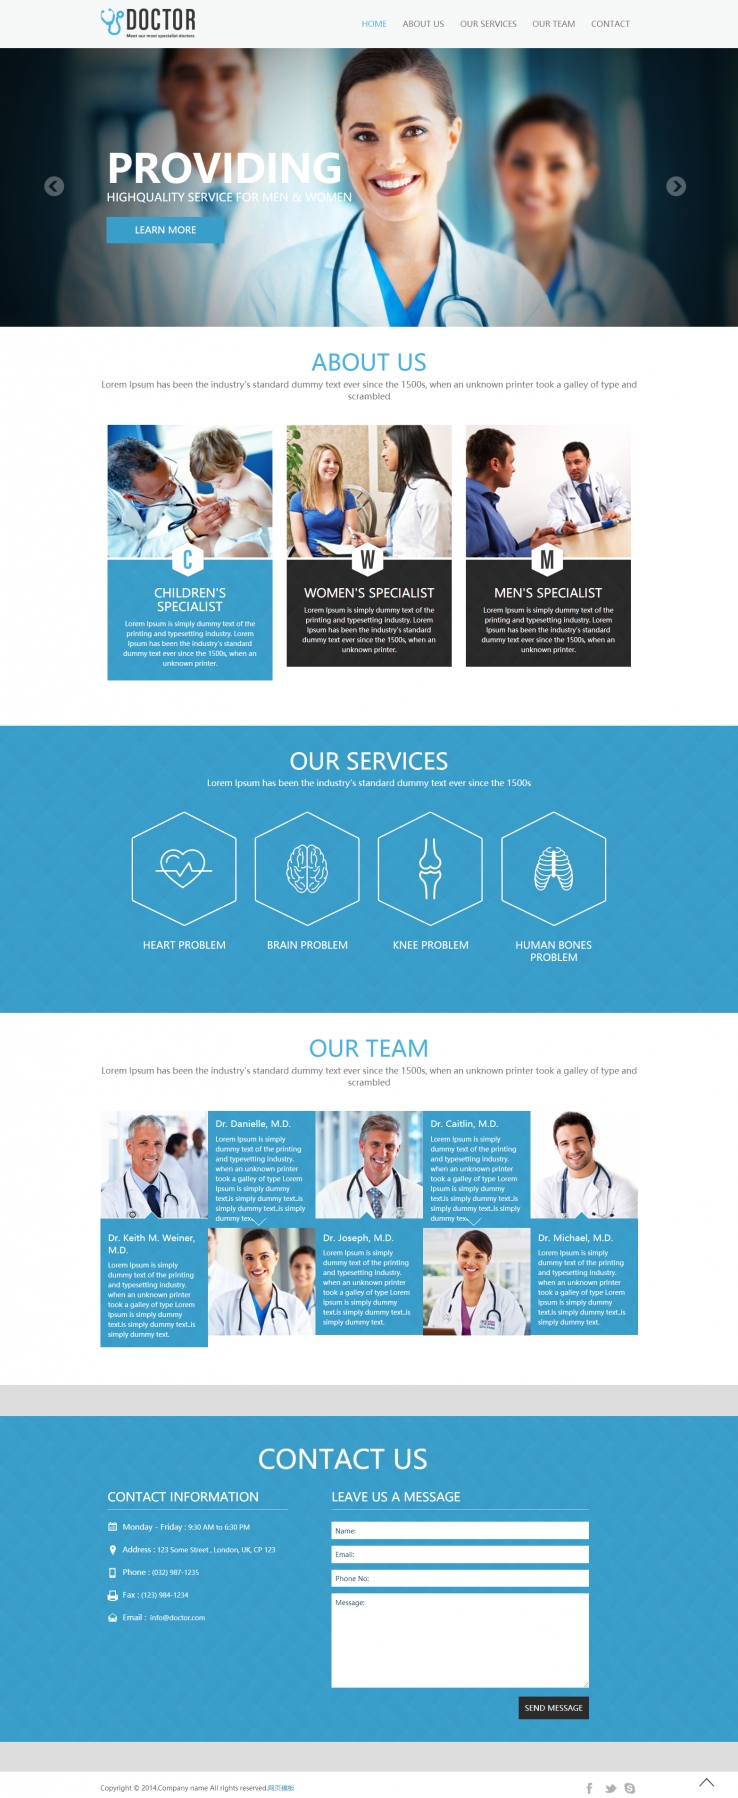 简洁蓝色风格的医疗行业HTML5网站模板